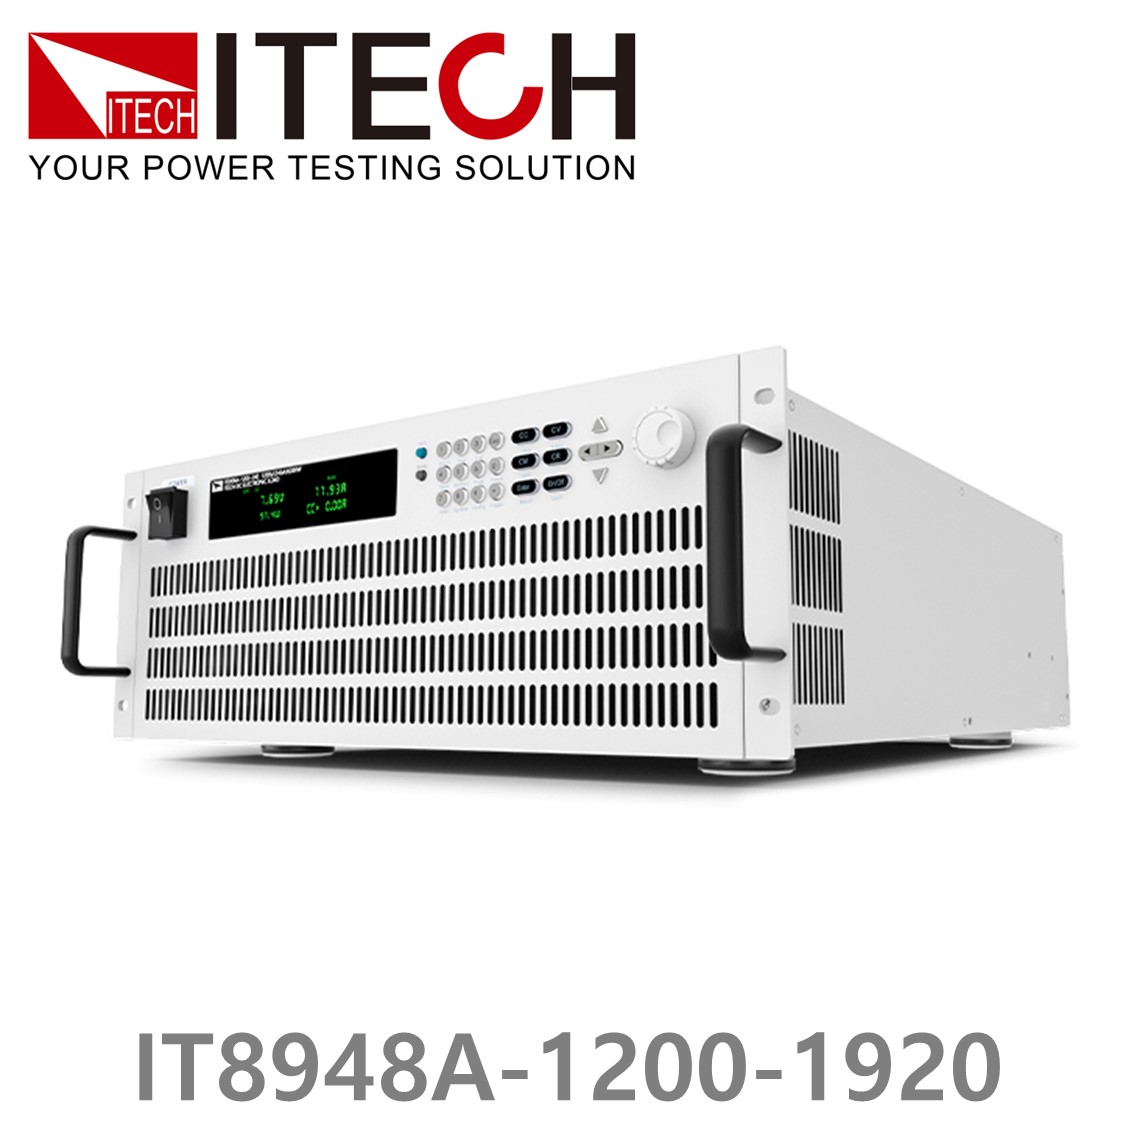 [ ITECH ] IT8948A-1200-1920  고성능 고전력 DC 전자로드 1200V/1920A/48kW (37U)